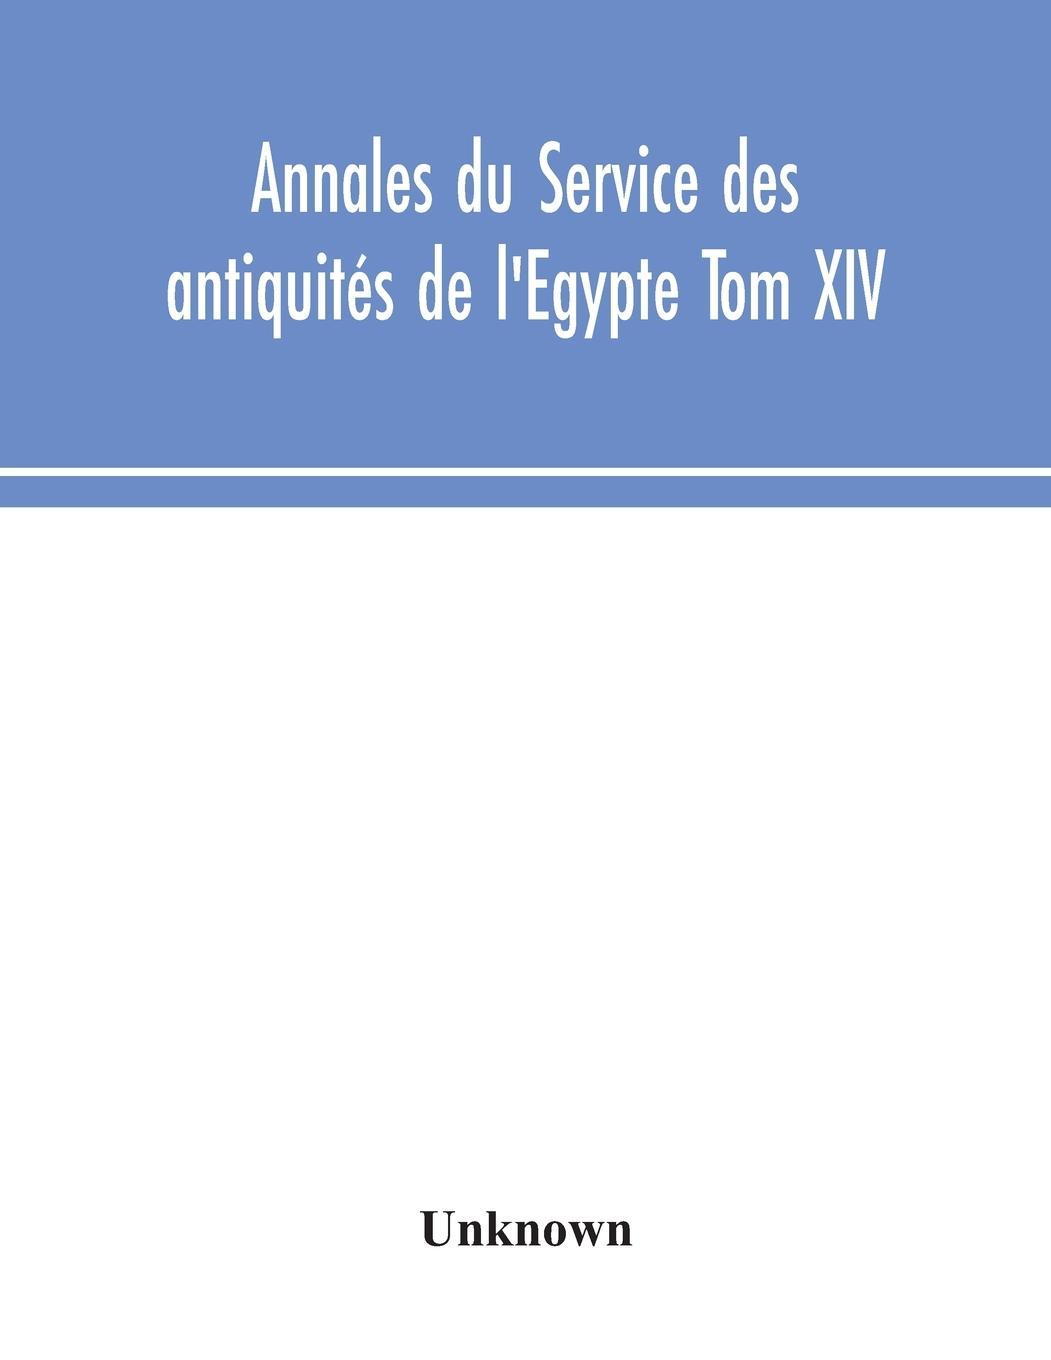 Carte Annales du Service des antiquites de l'Egypte Tom XIV 